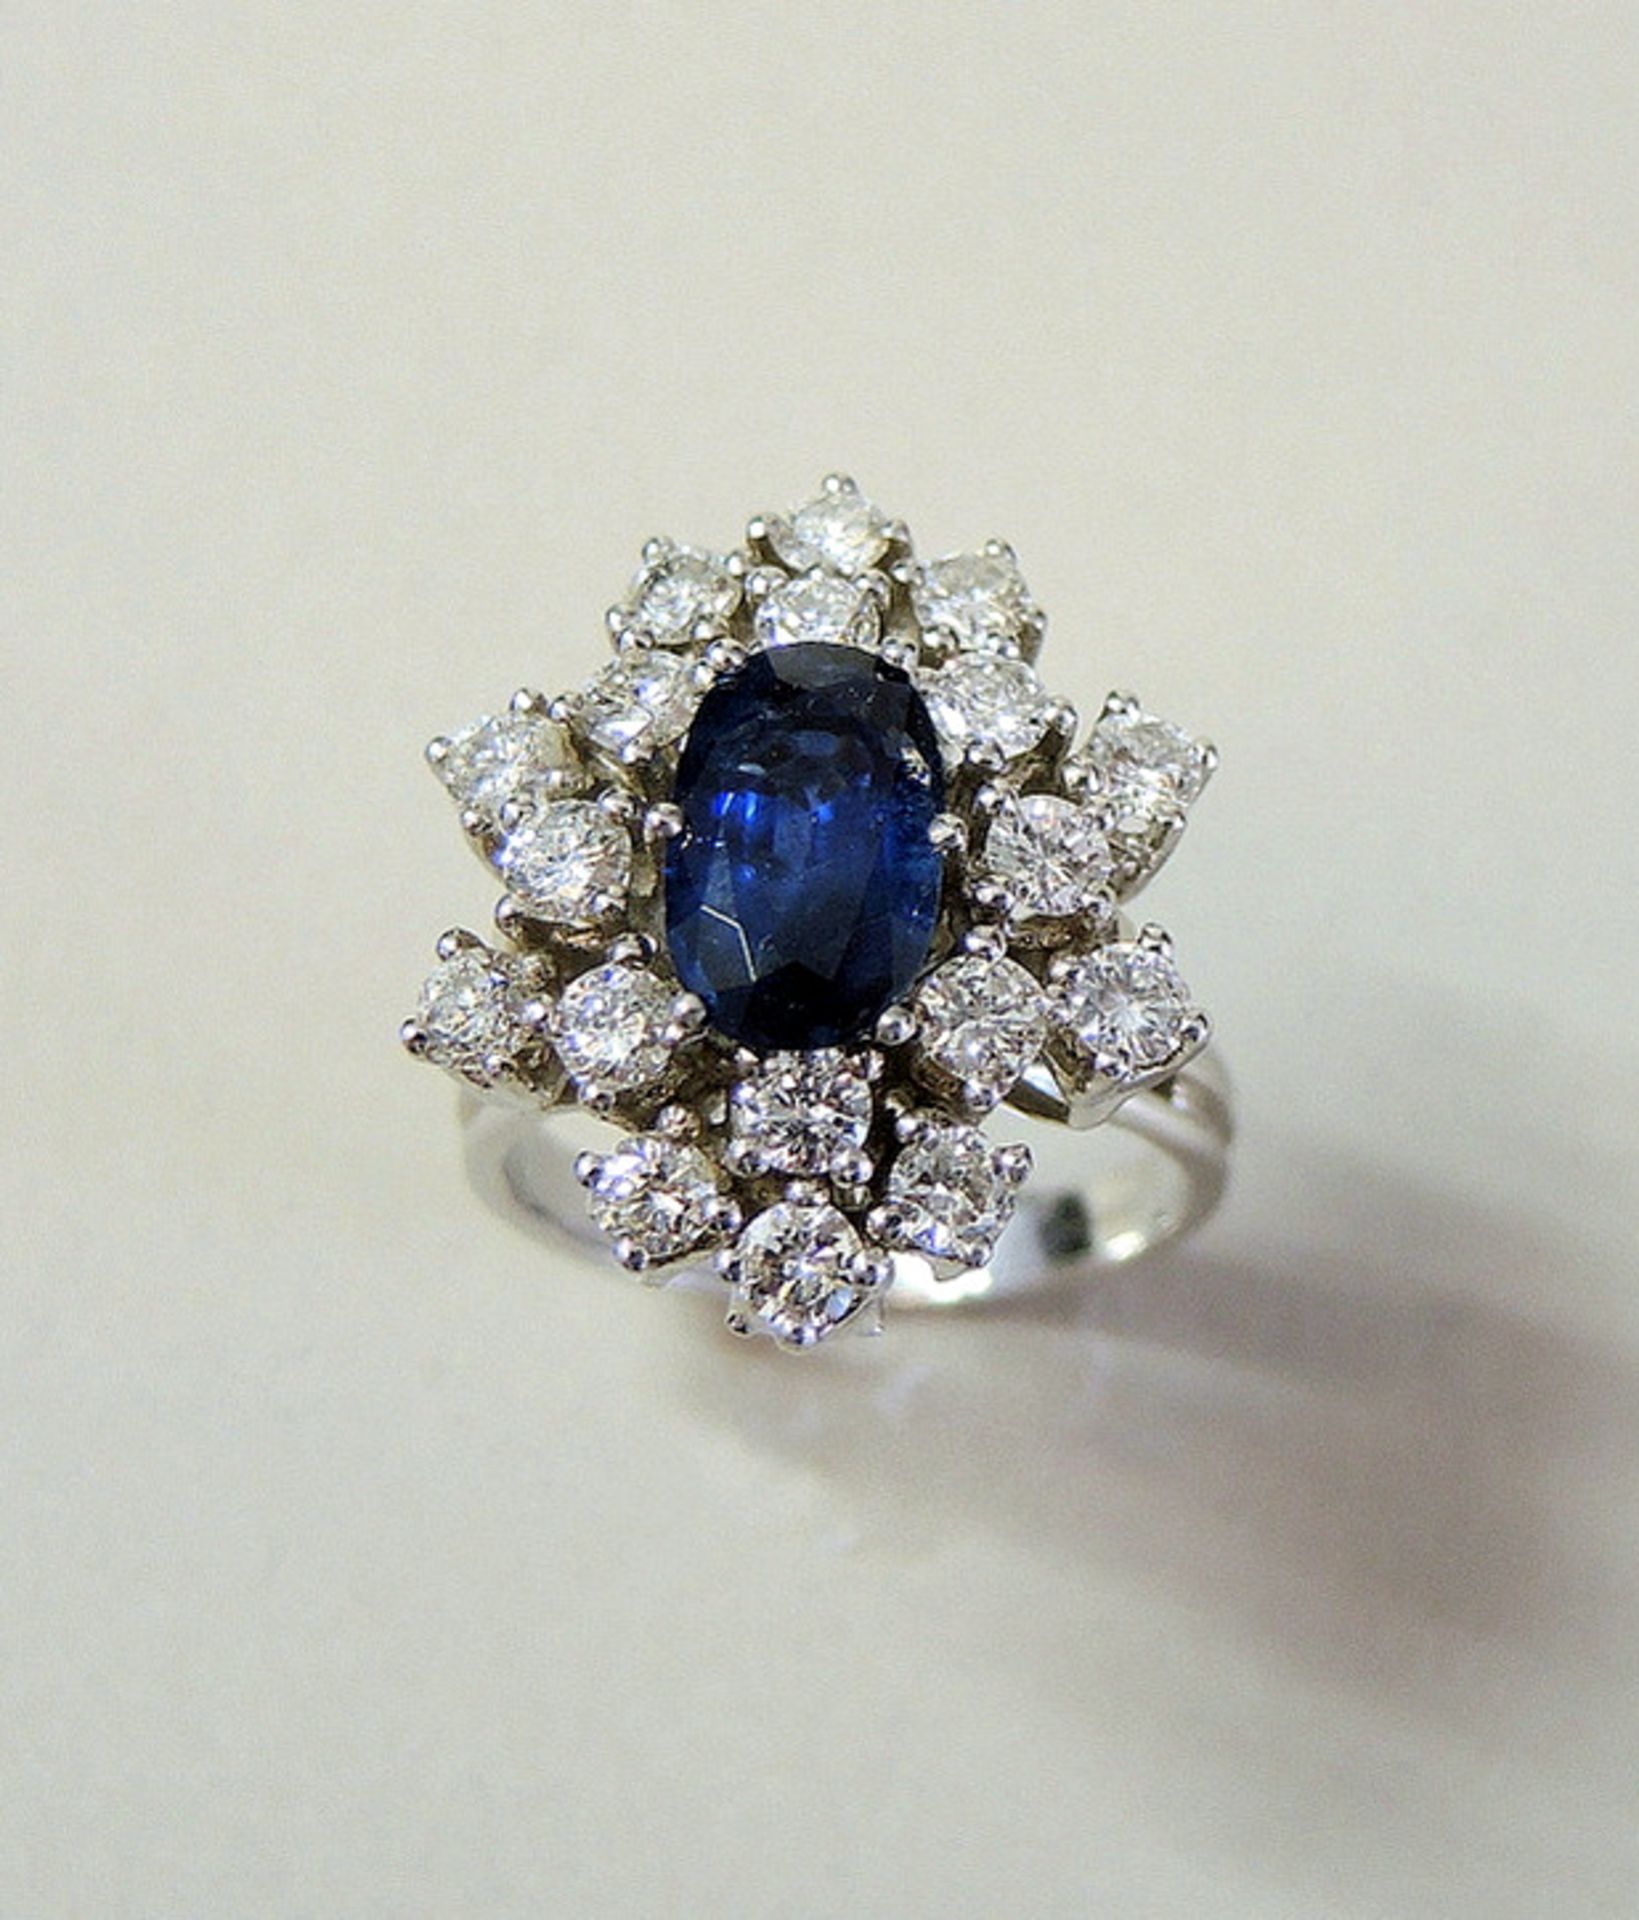 Saphir-Diamant-Ring in Blumenform Damenring, 14 kt. Weißgold. Saphir von ca. 1,8 ct., sowie